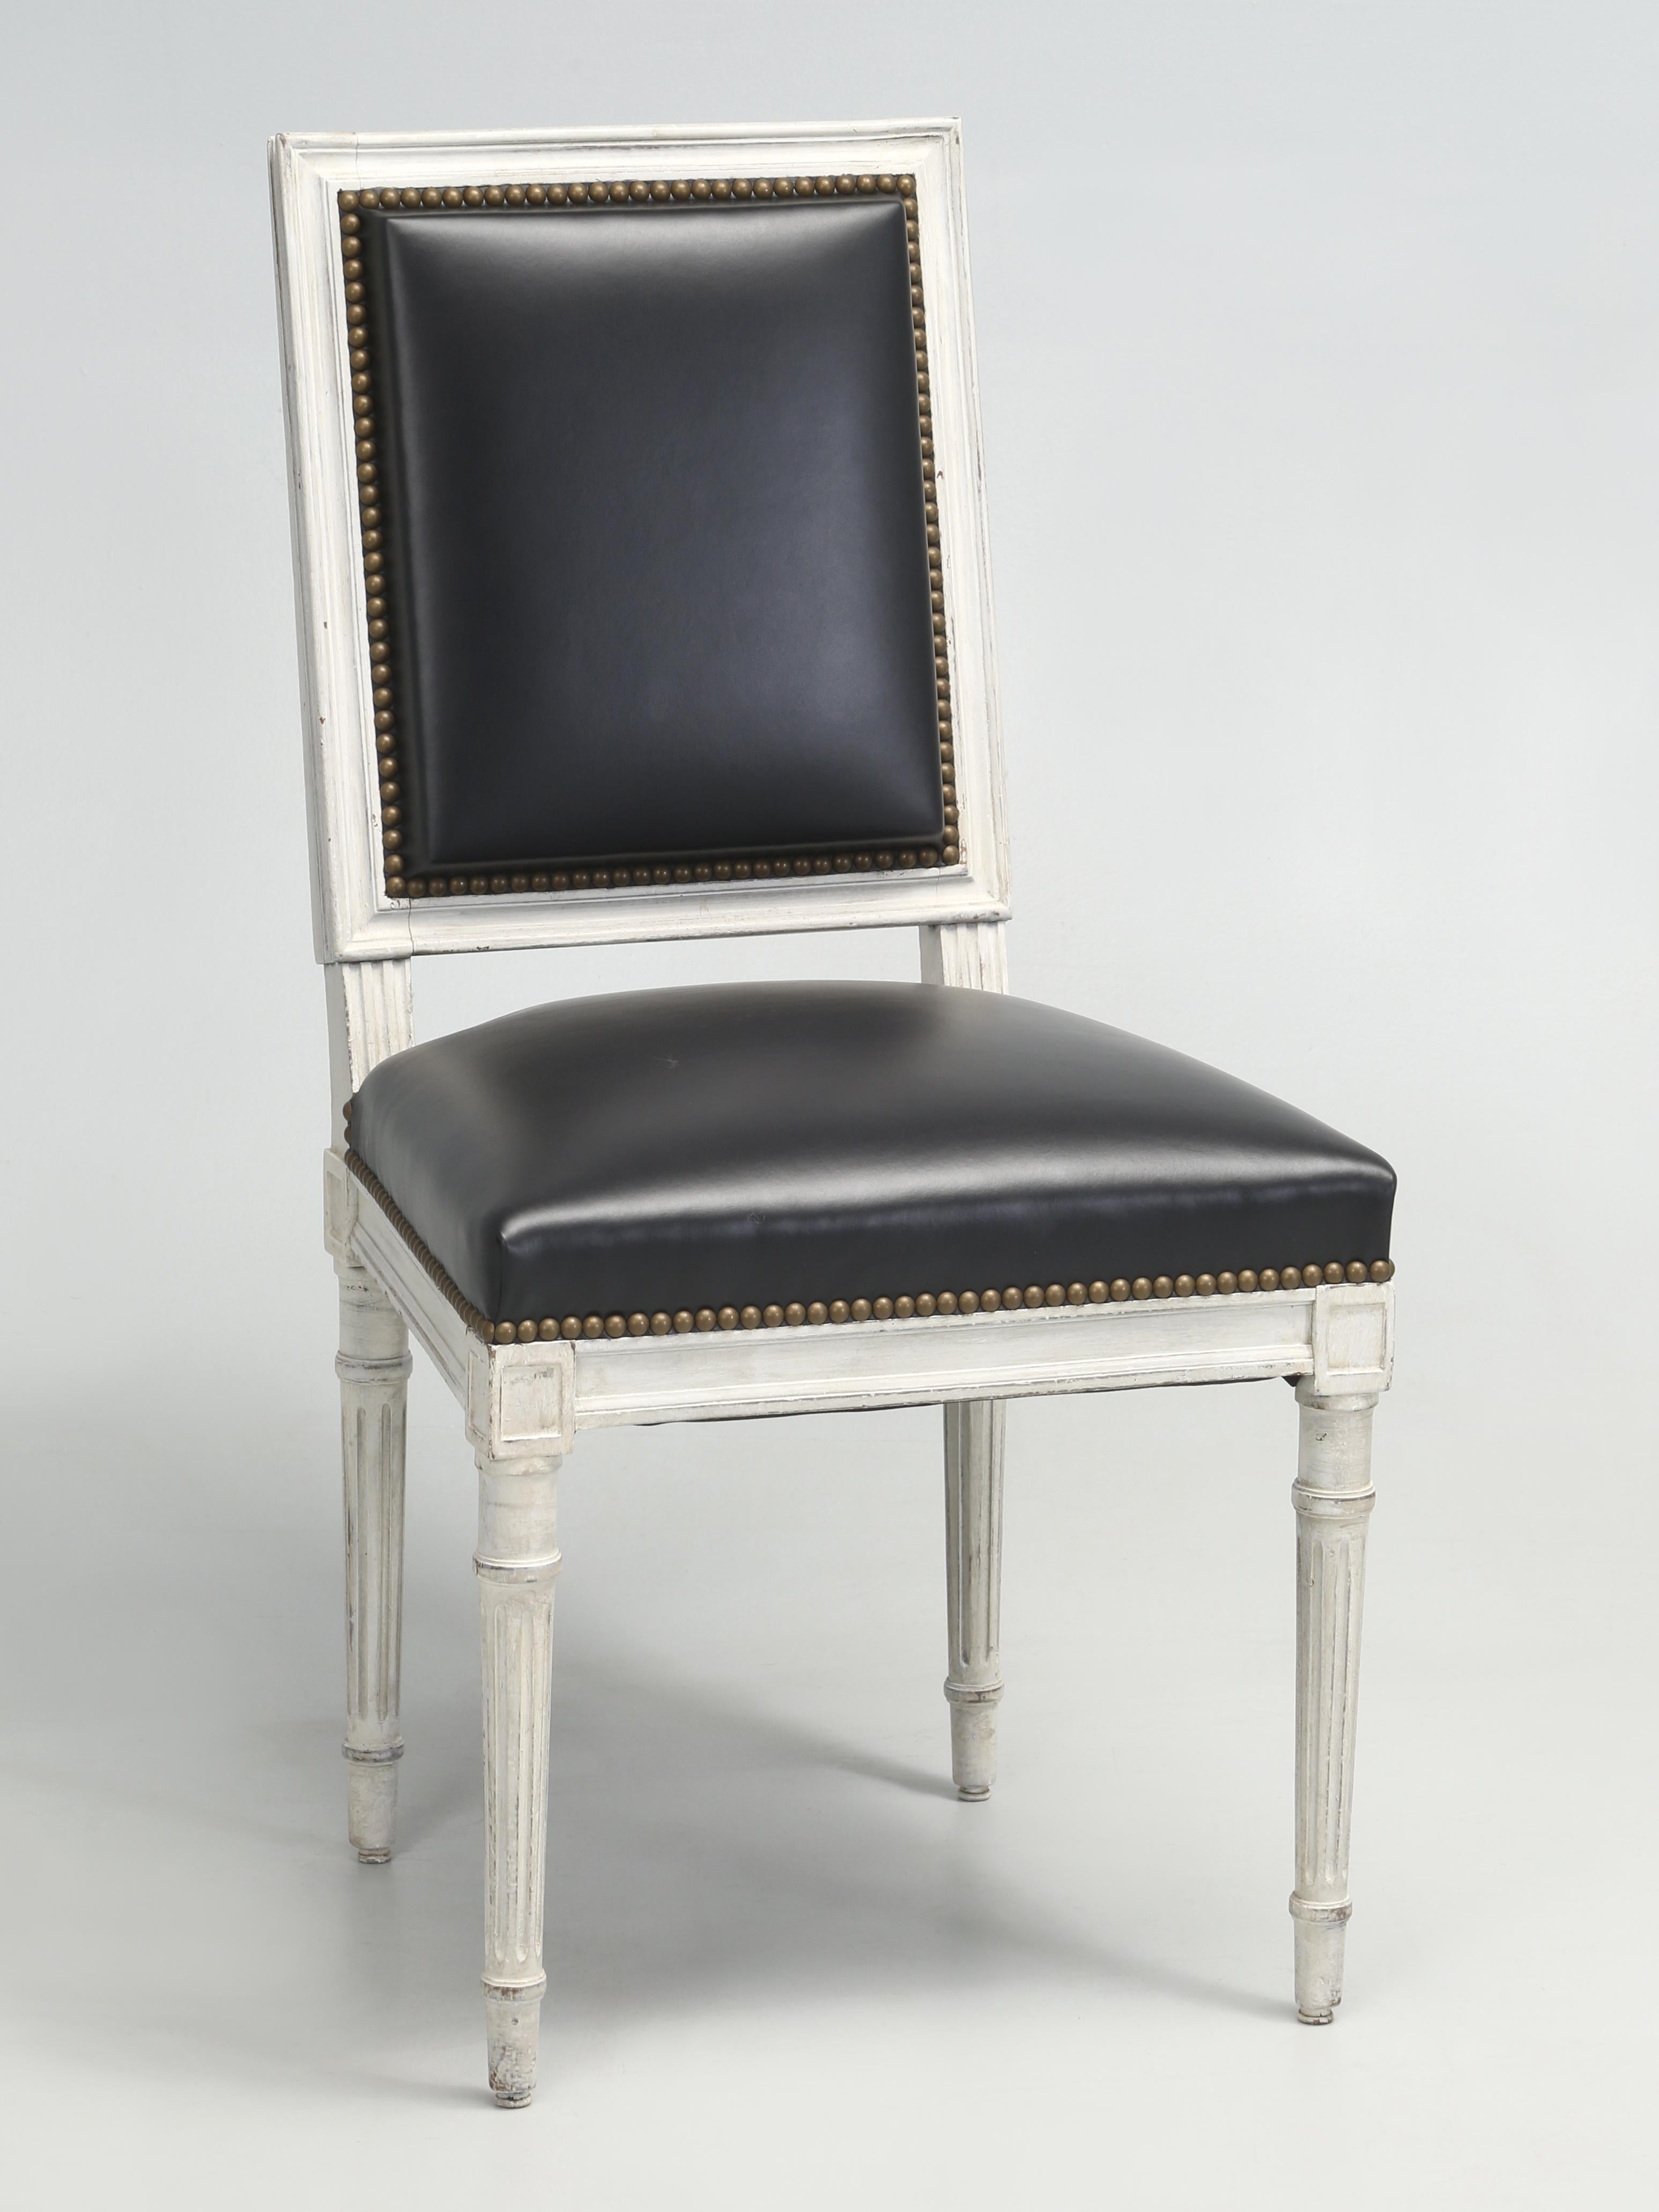 Chaises de salle à manger françaises de style Louis XVI que notre service de tapisserie d'ameublement et de restauration a restaurées à partir du cadre en bois nu. Tout a été fait à l'ancienne, avec du crin de cheval et des fibres de coco